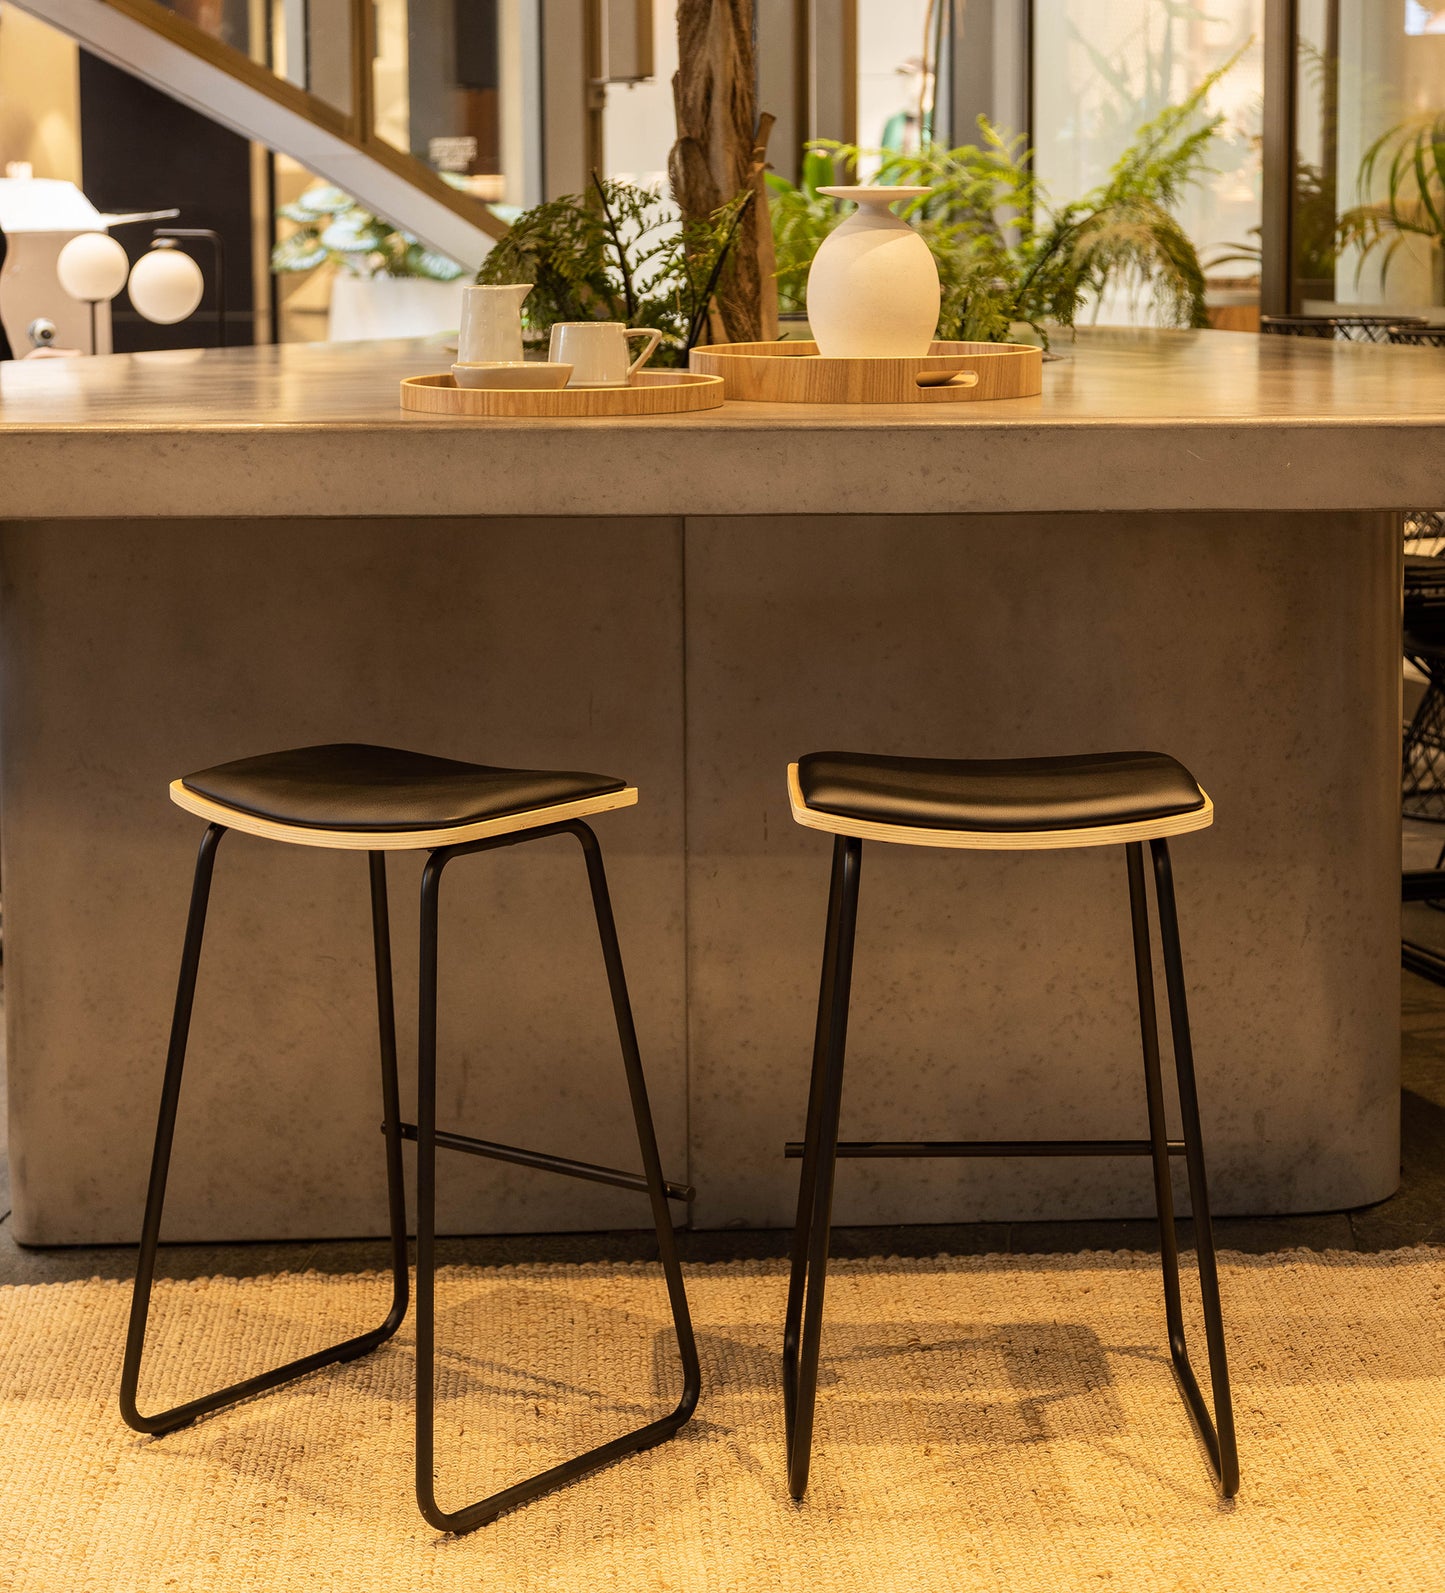 Minimalist bar stool 67cm – green with envy nz